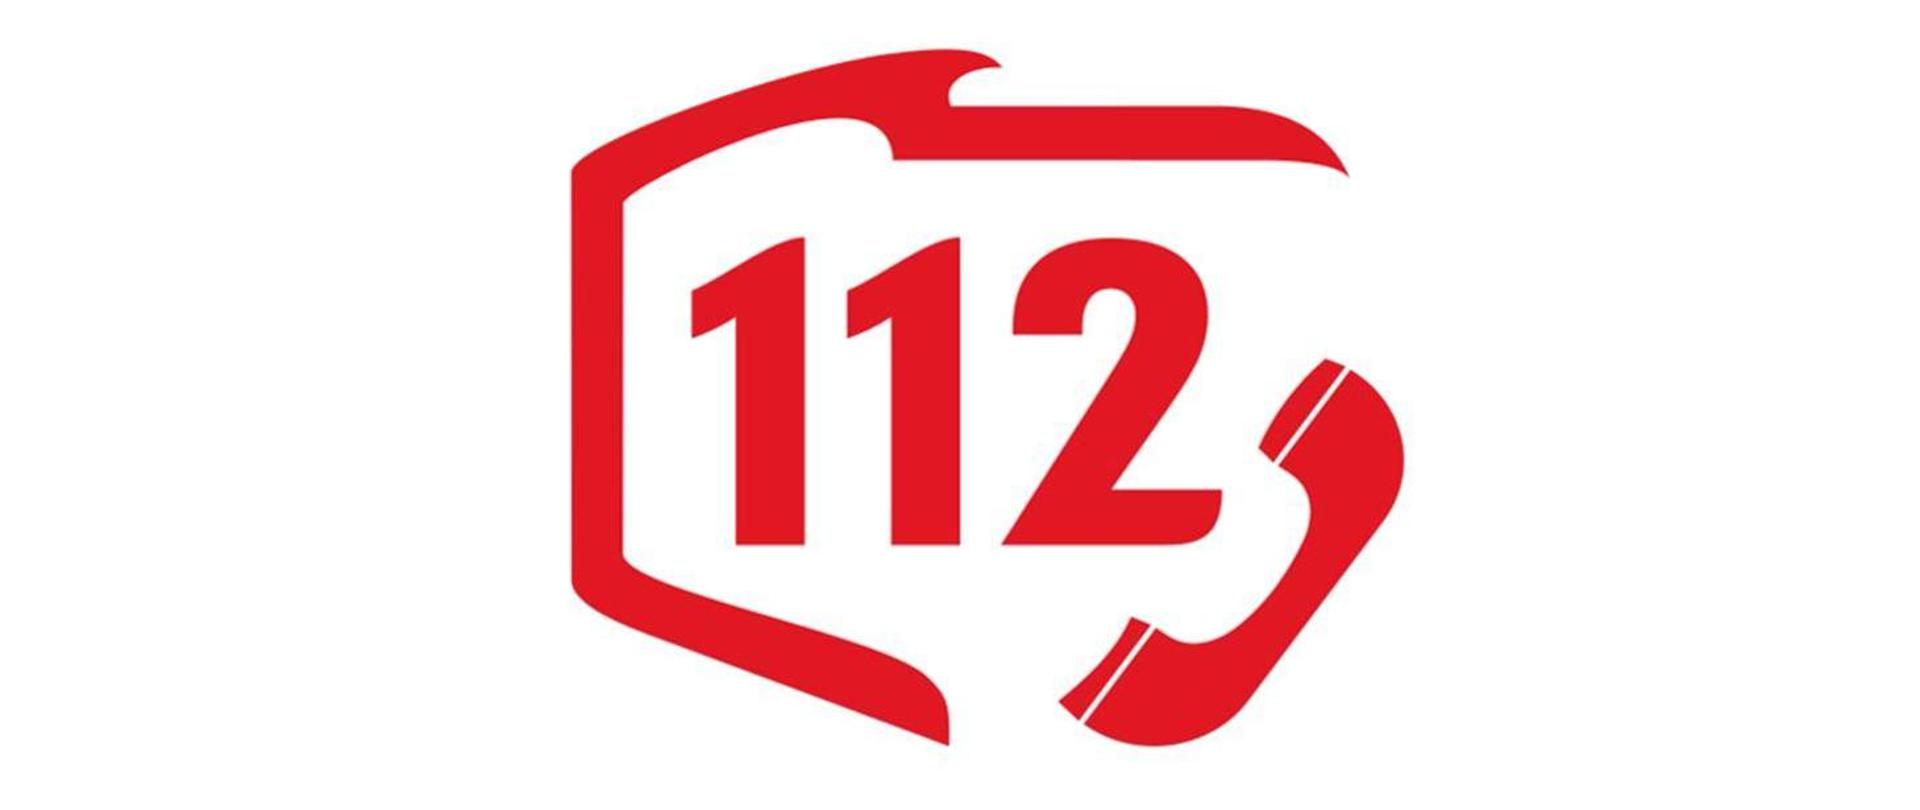 Europejski Dzień Numeru Alarmowego 112